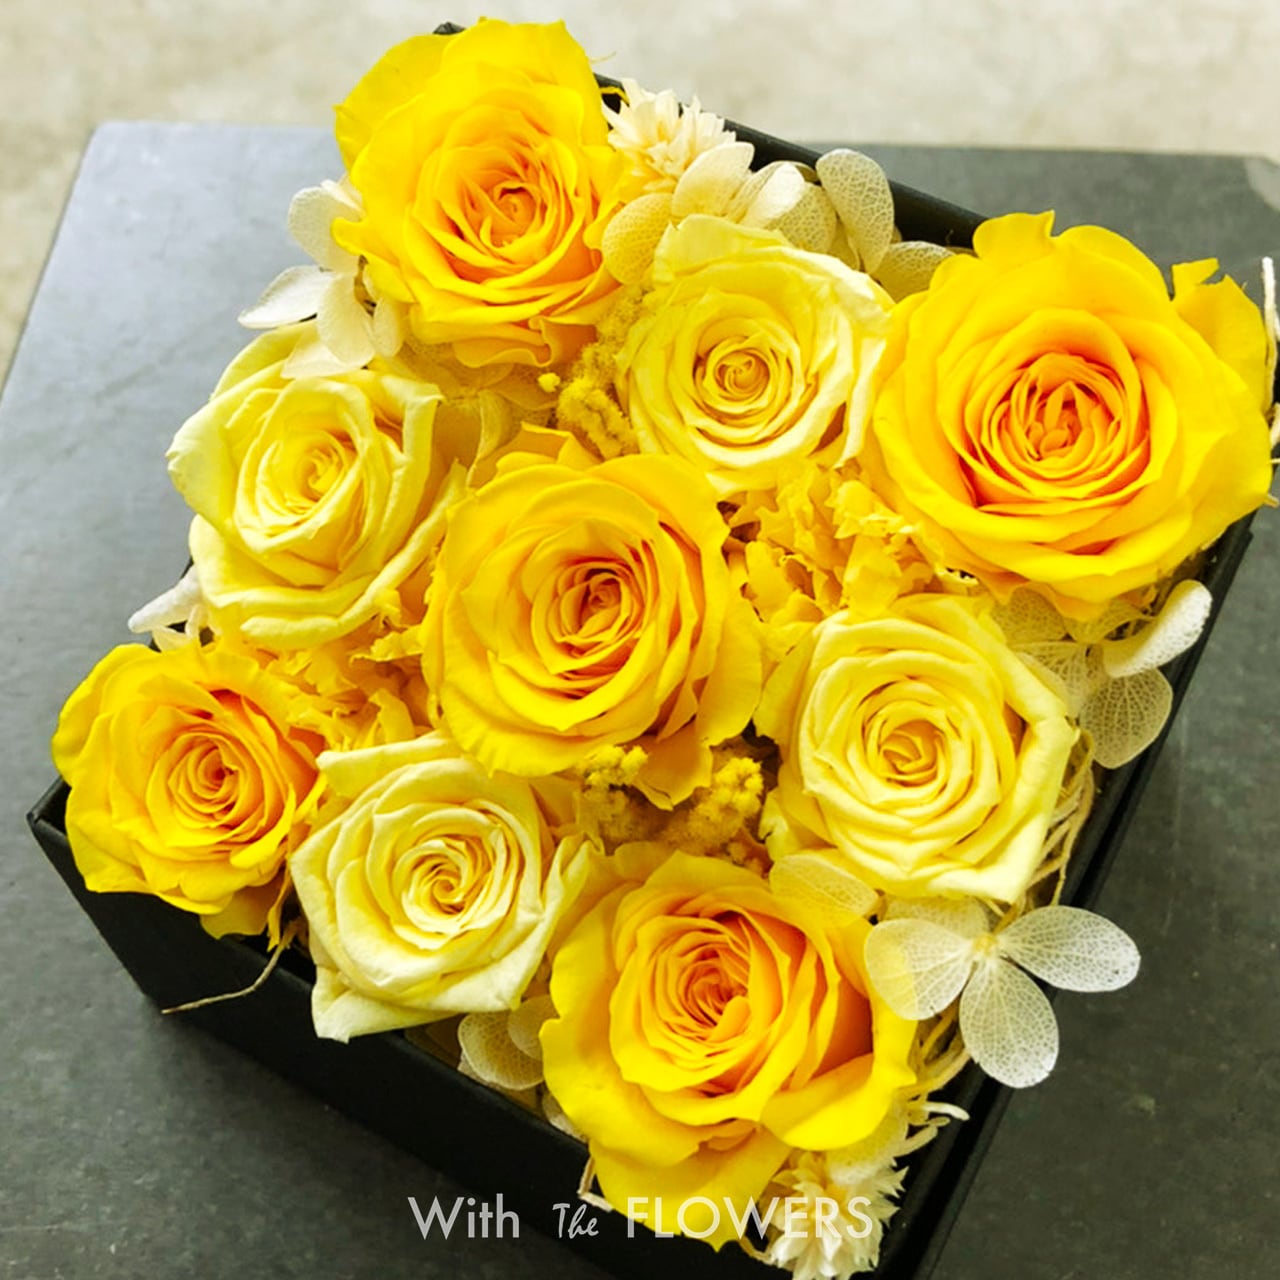 プリザーブドフラワーBOXアレンジ 【イエロー】7,700円（税込） With The FLOWERS